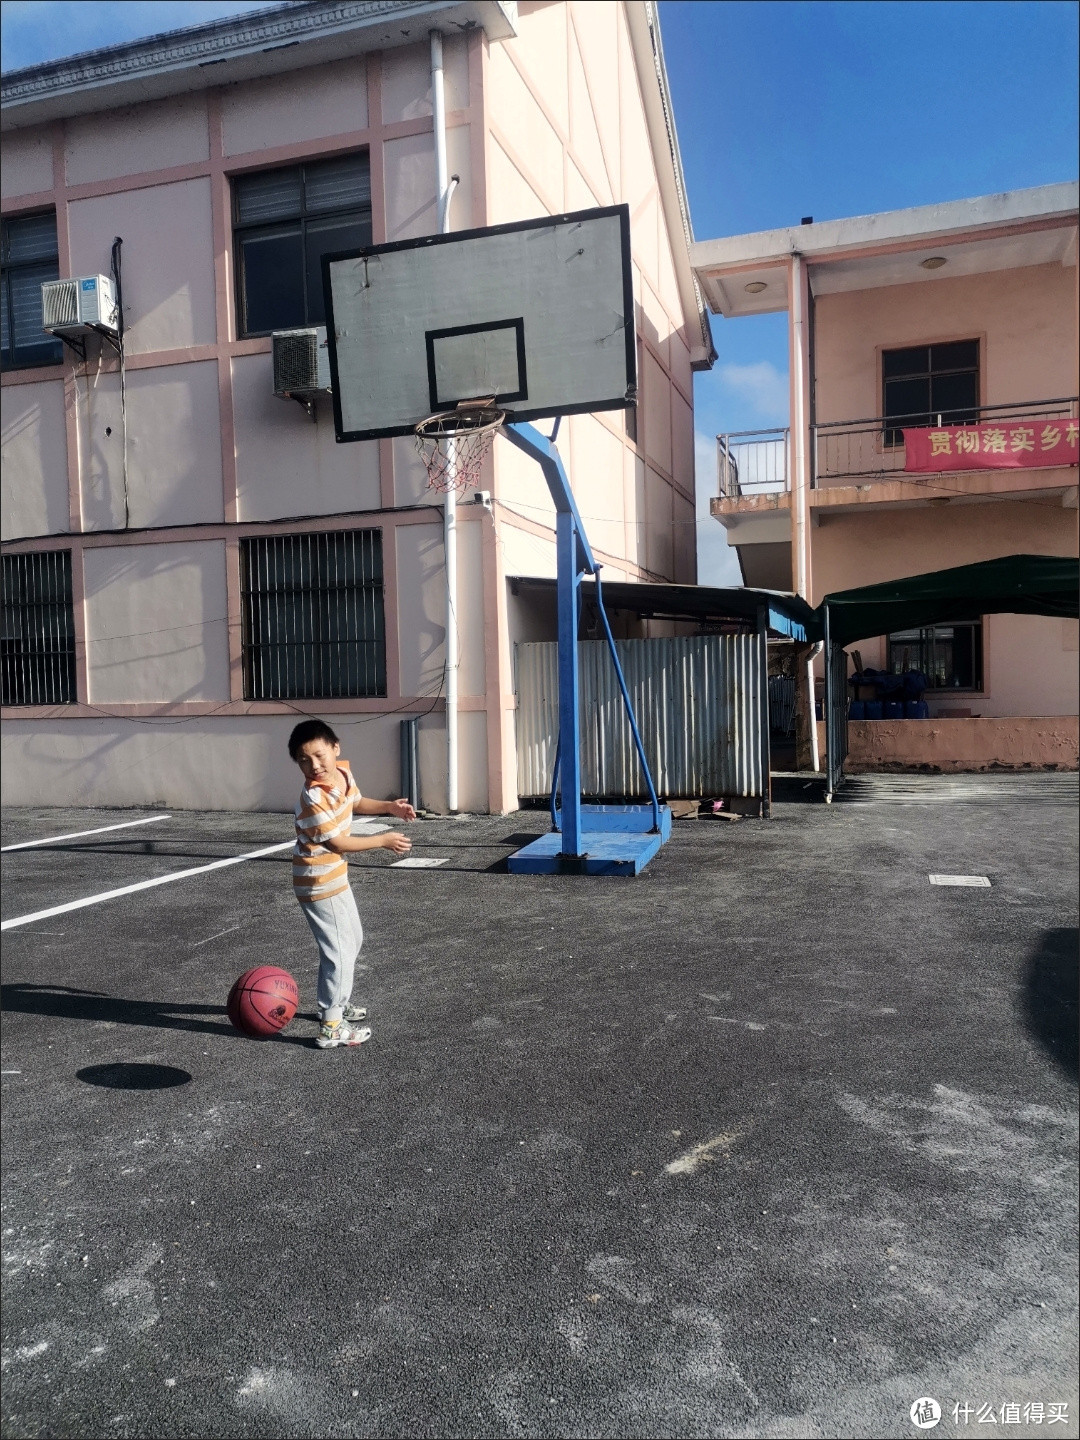 每天都要坚持和孩子一起去篮球场打篮球